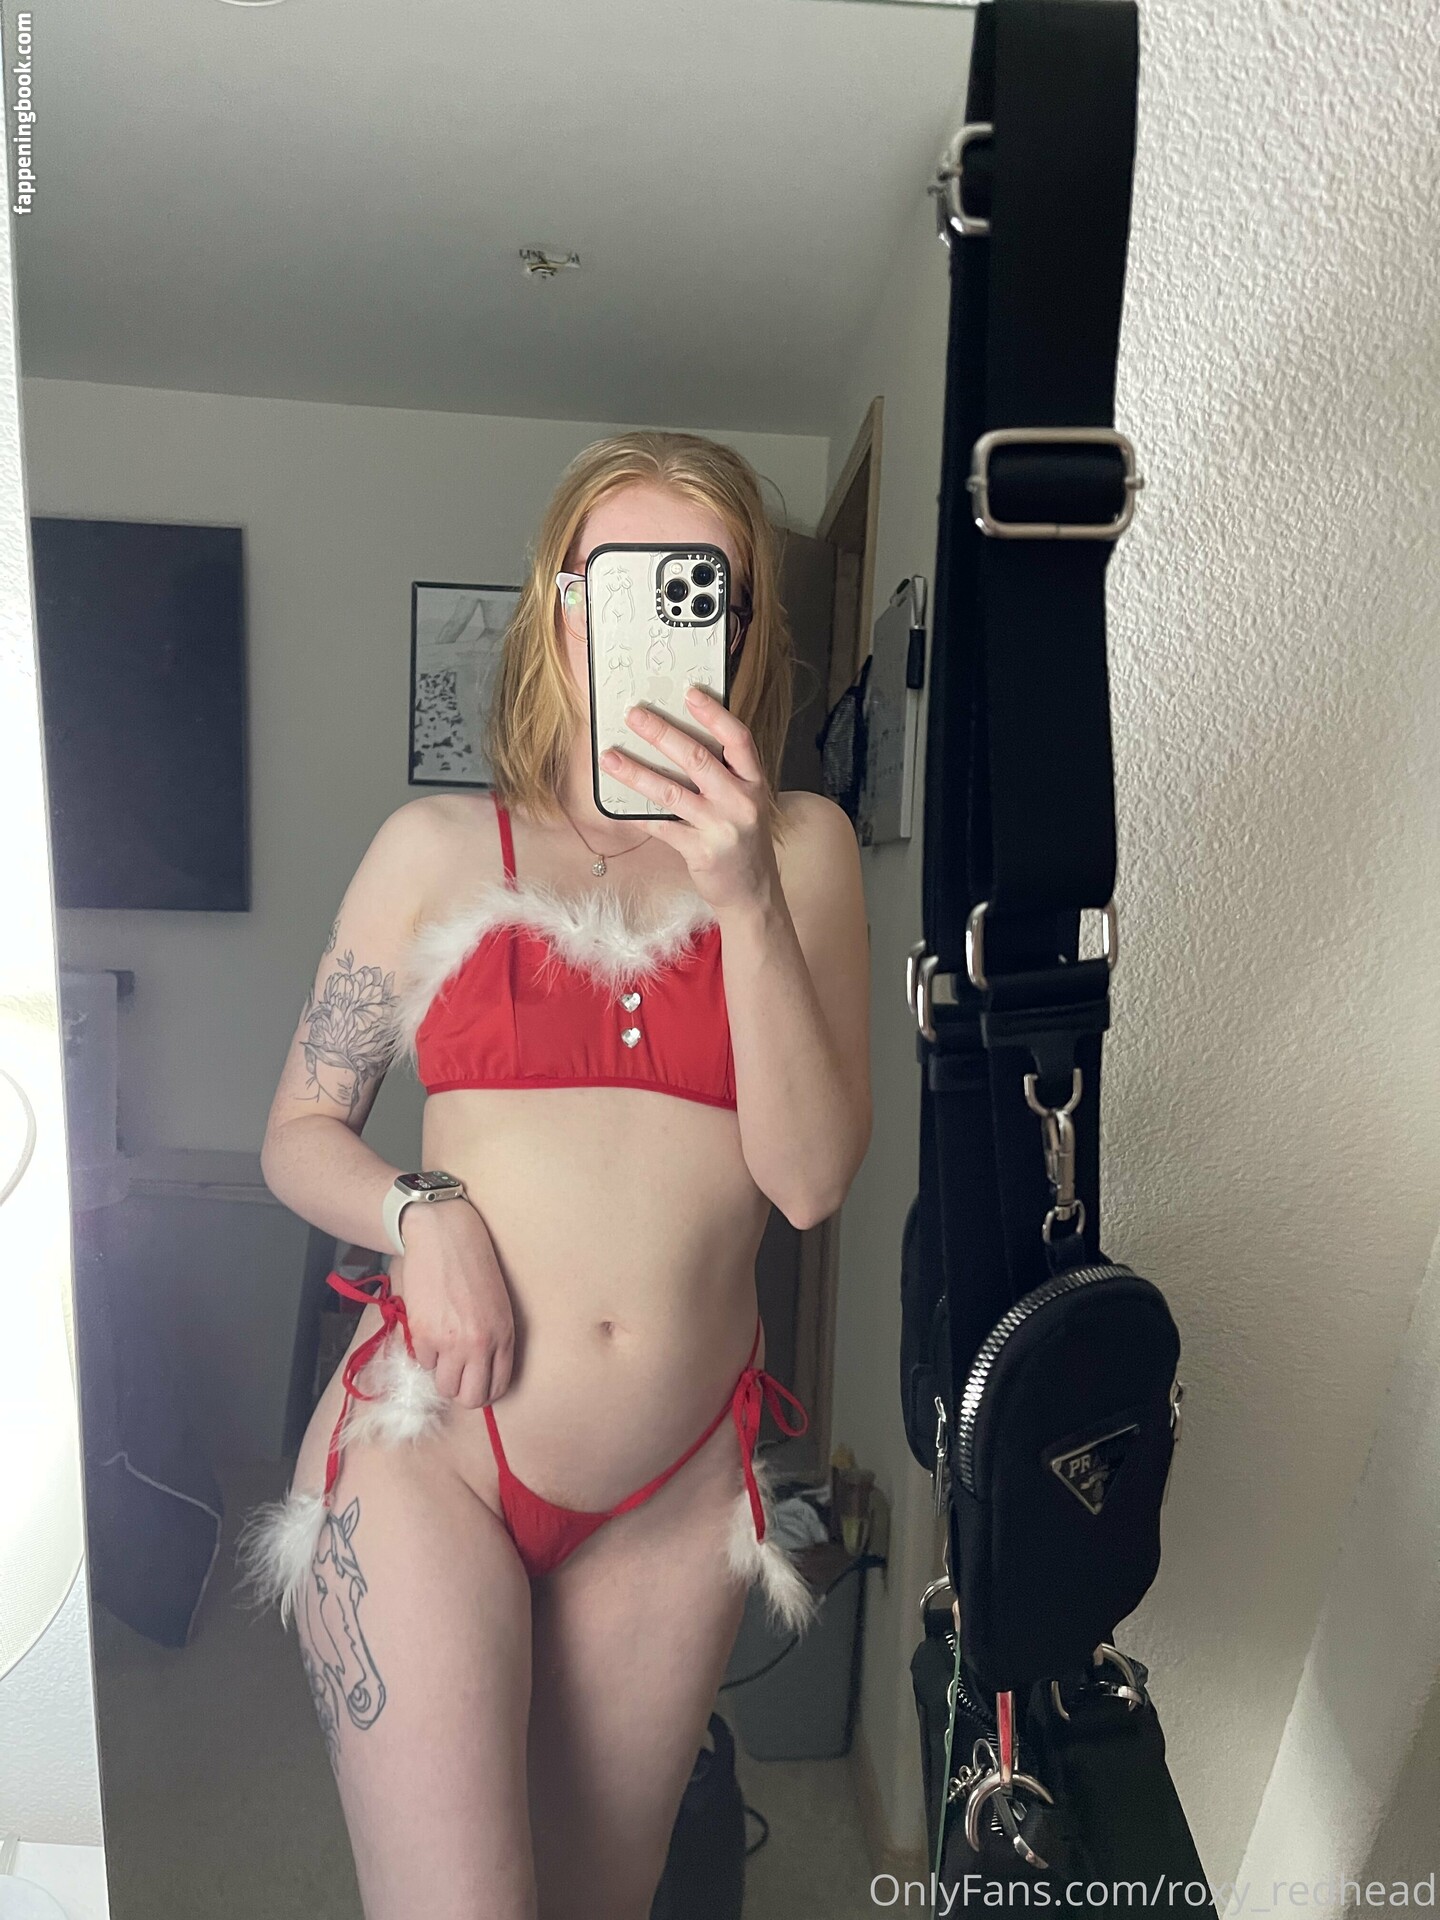 roxy_redhead Nude OnlyFans Leaks